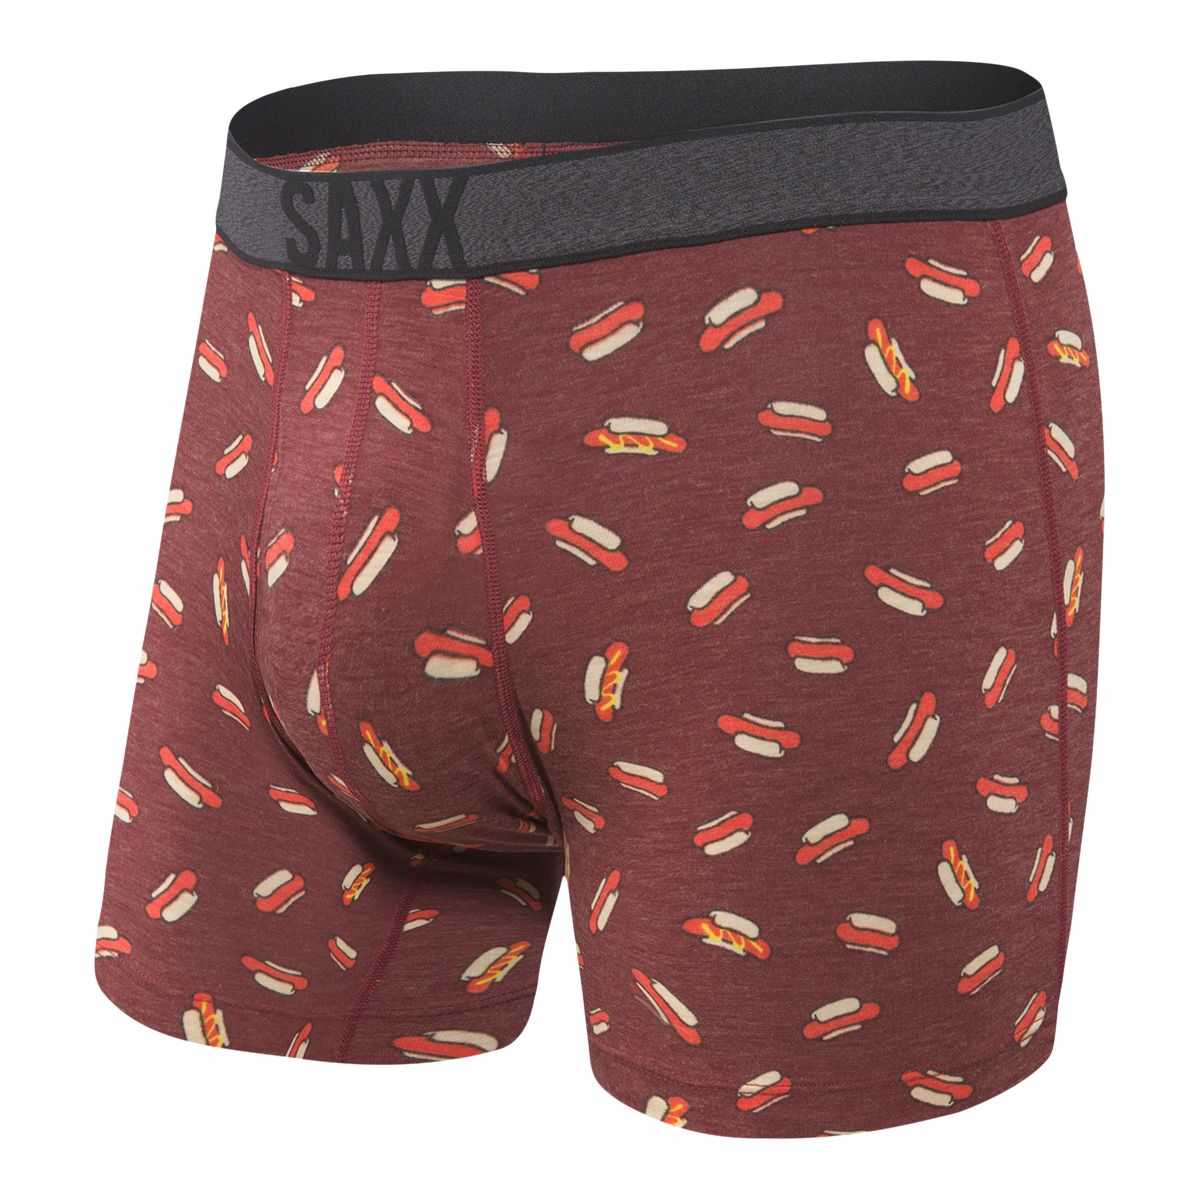 SAXX Viewfinder Fly Men's Boxer Brief, Wool Blend Underwear, Thermal